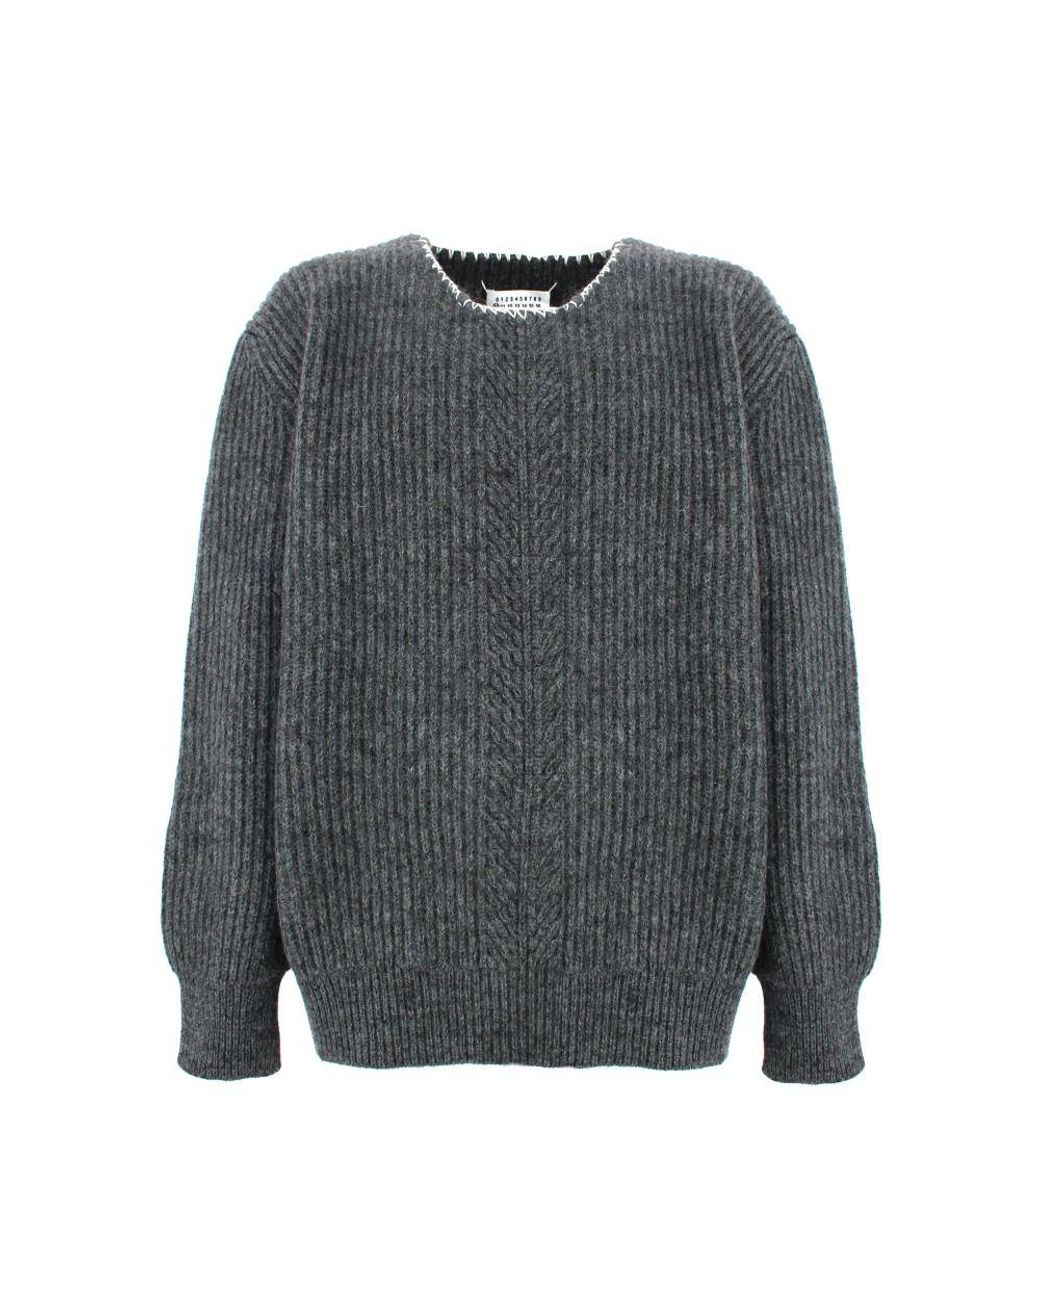 Maison Margiela Wool Sweater in Grey (Gray) for Men - Lyst